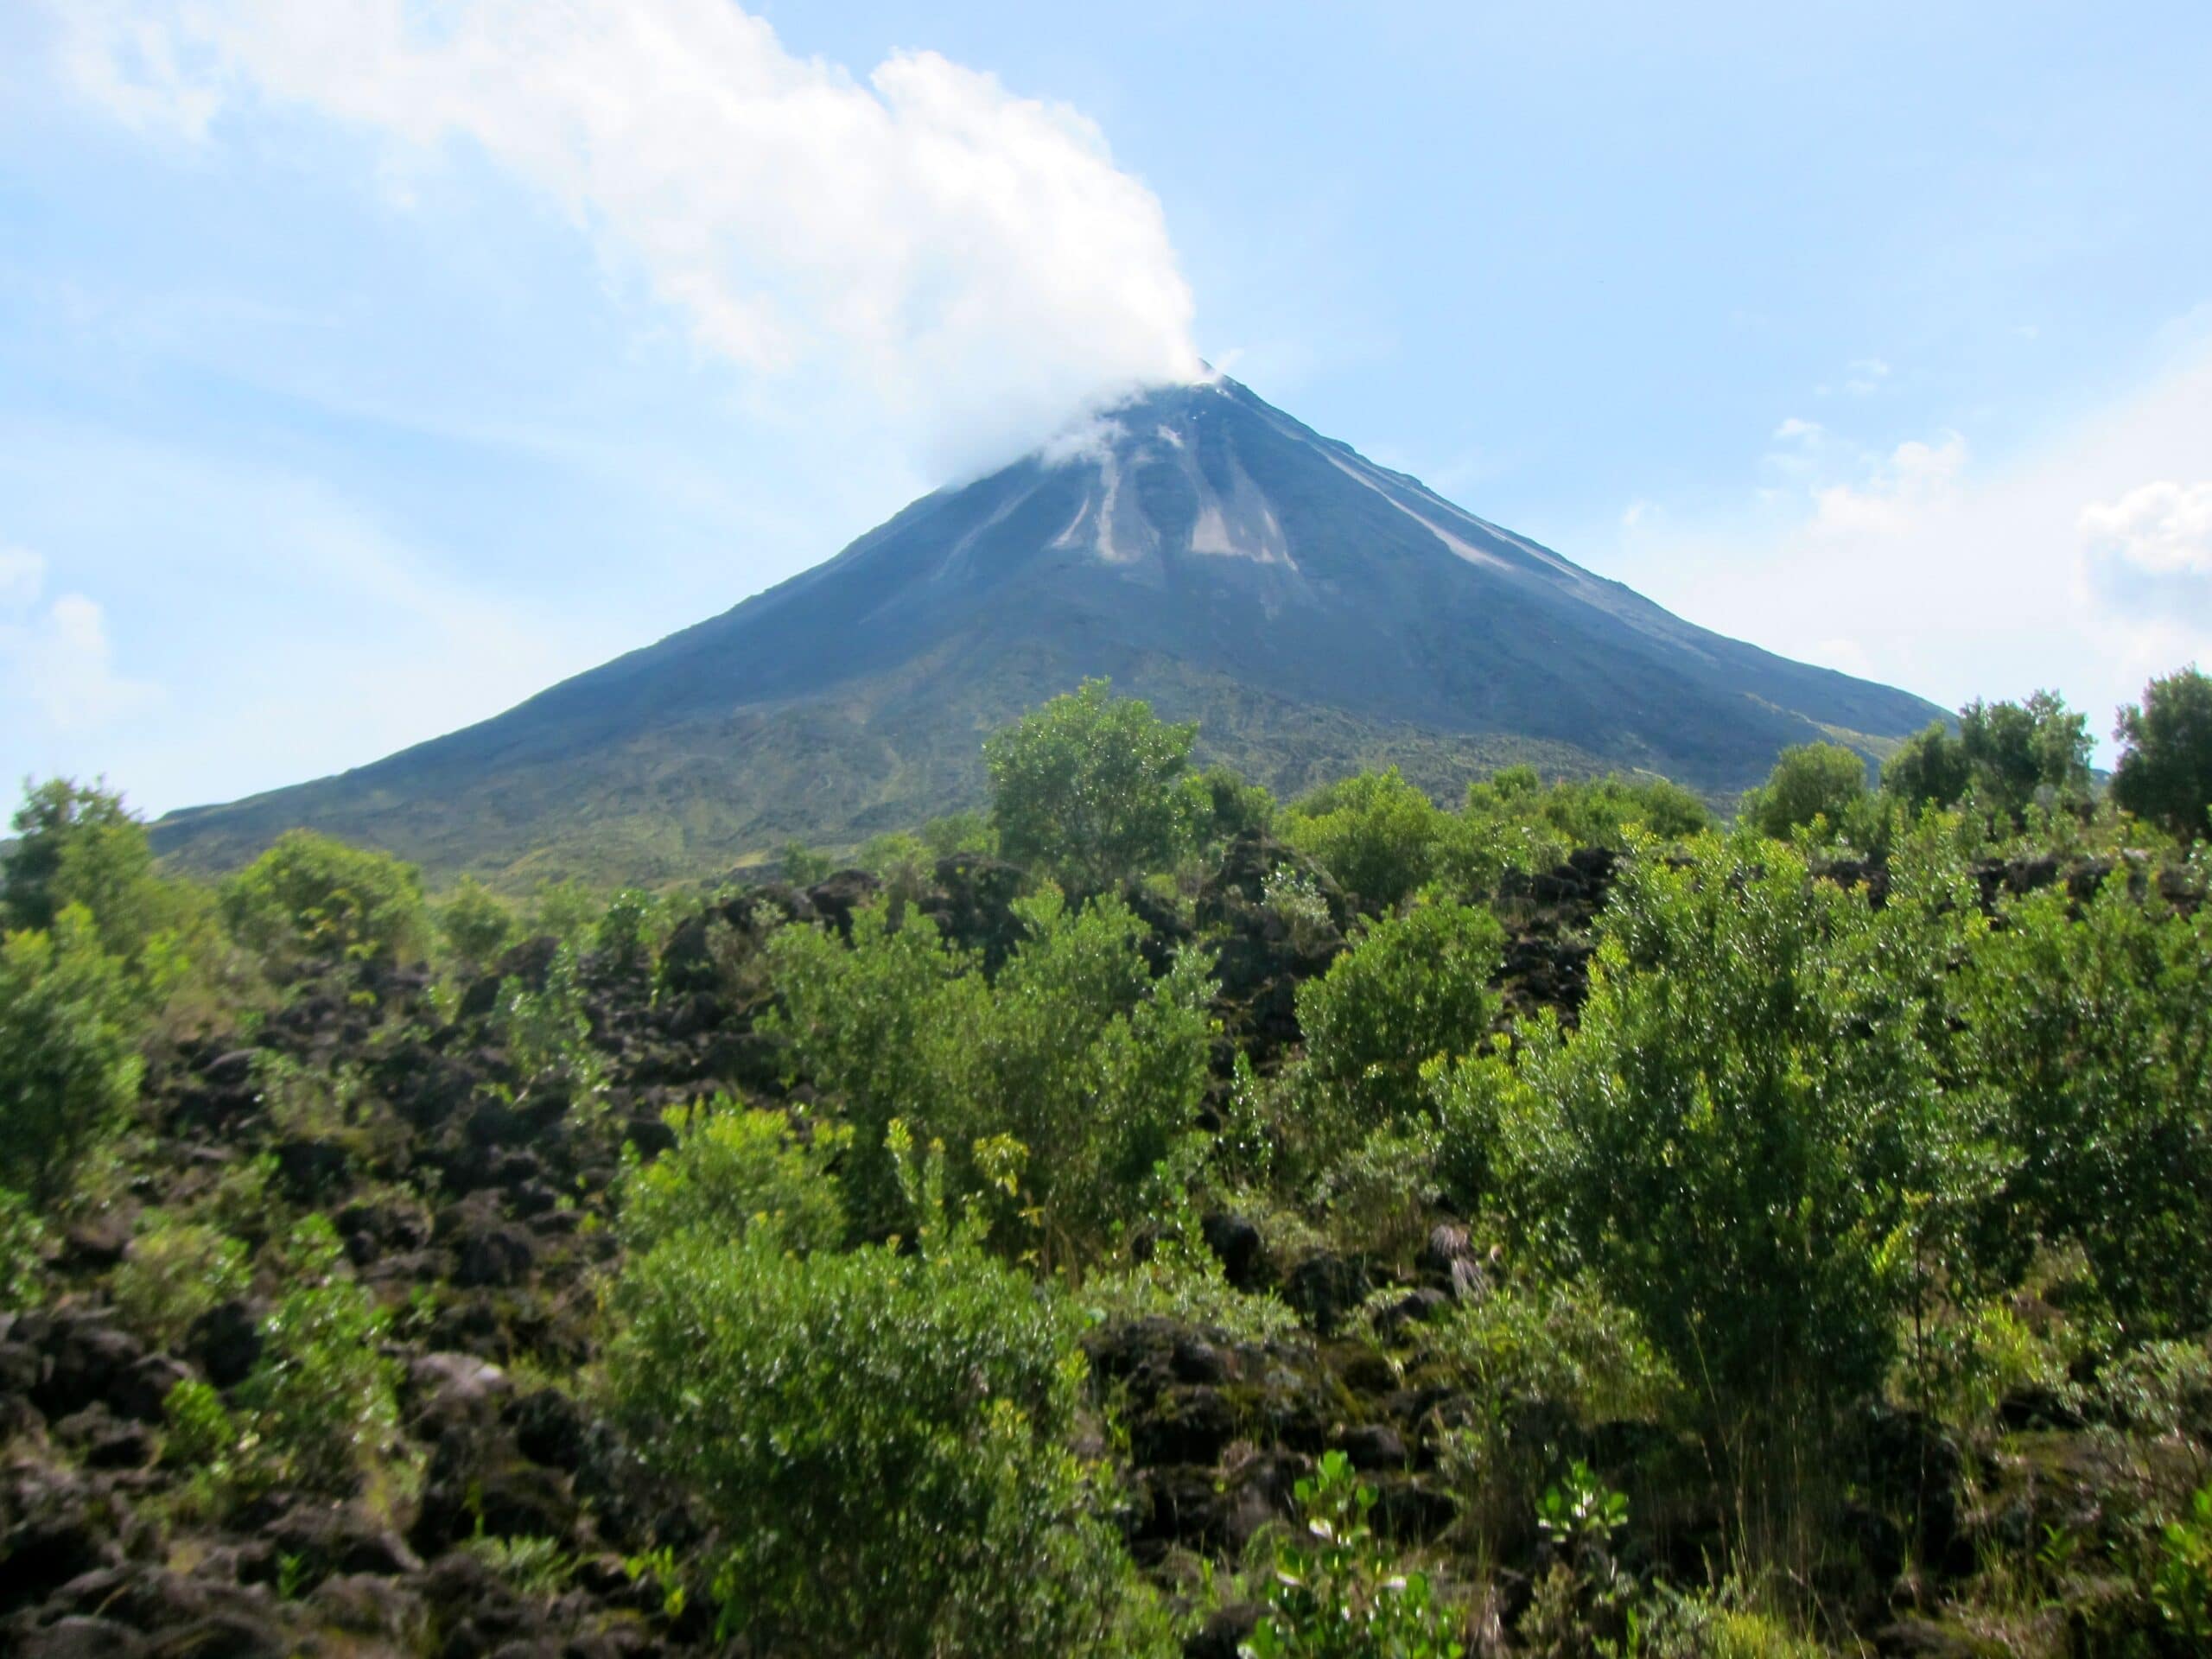 Costa Rica’s amazing volcanoes